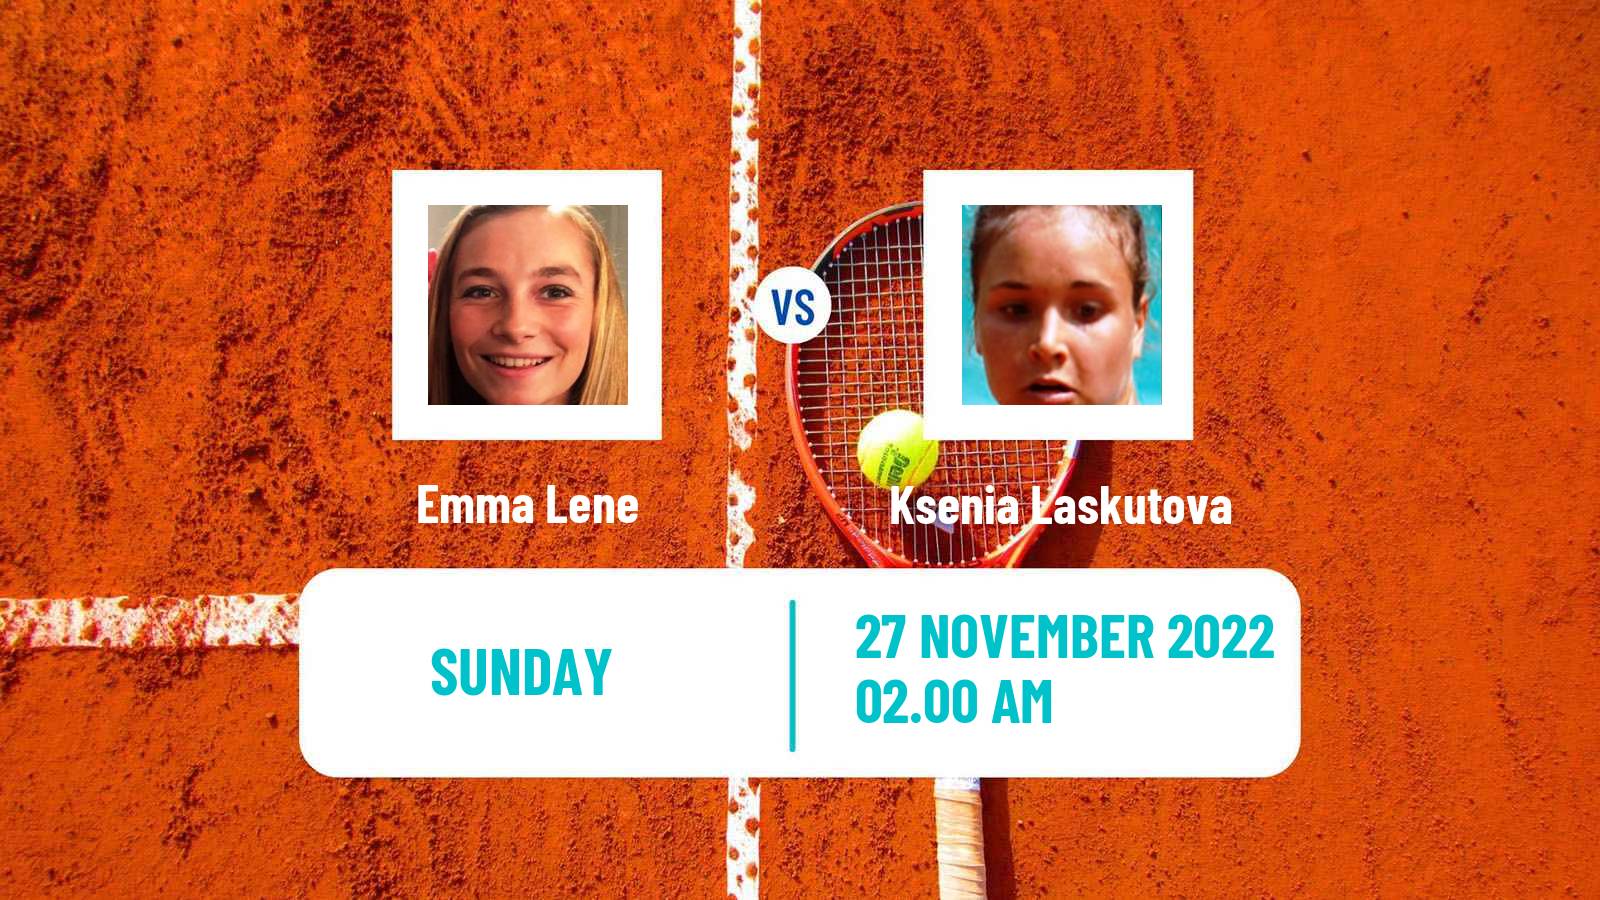 Tennis ITF Tournaments Emma Lene - Ksenia Laskutova